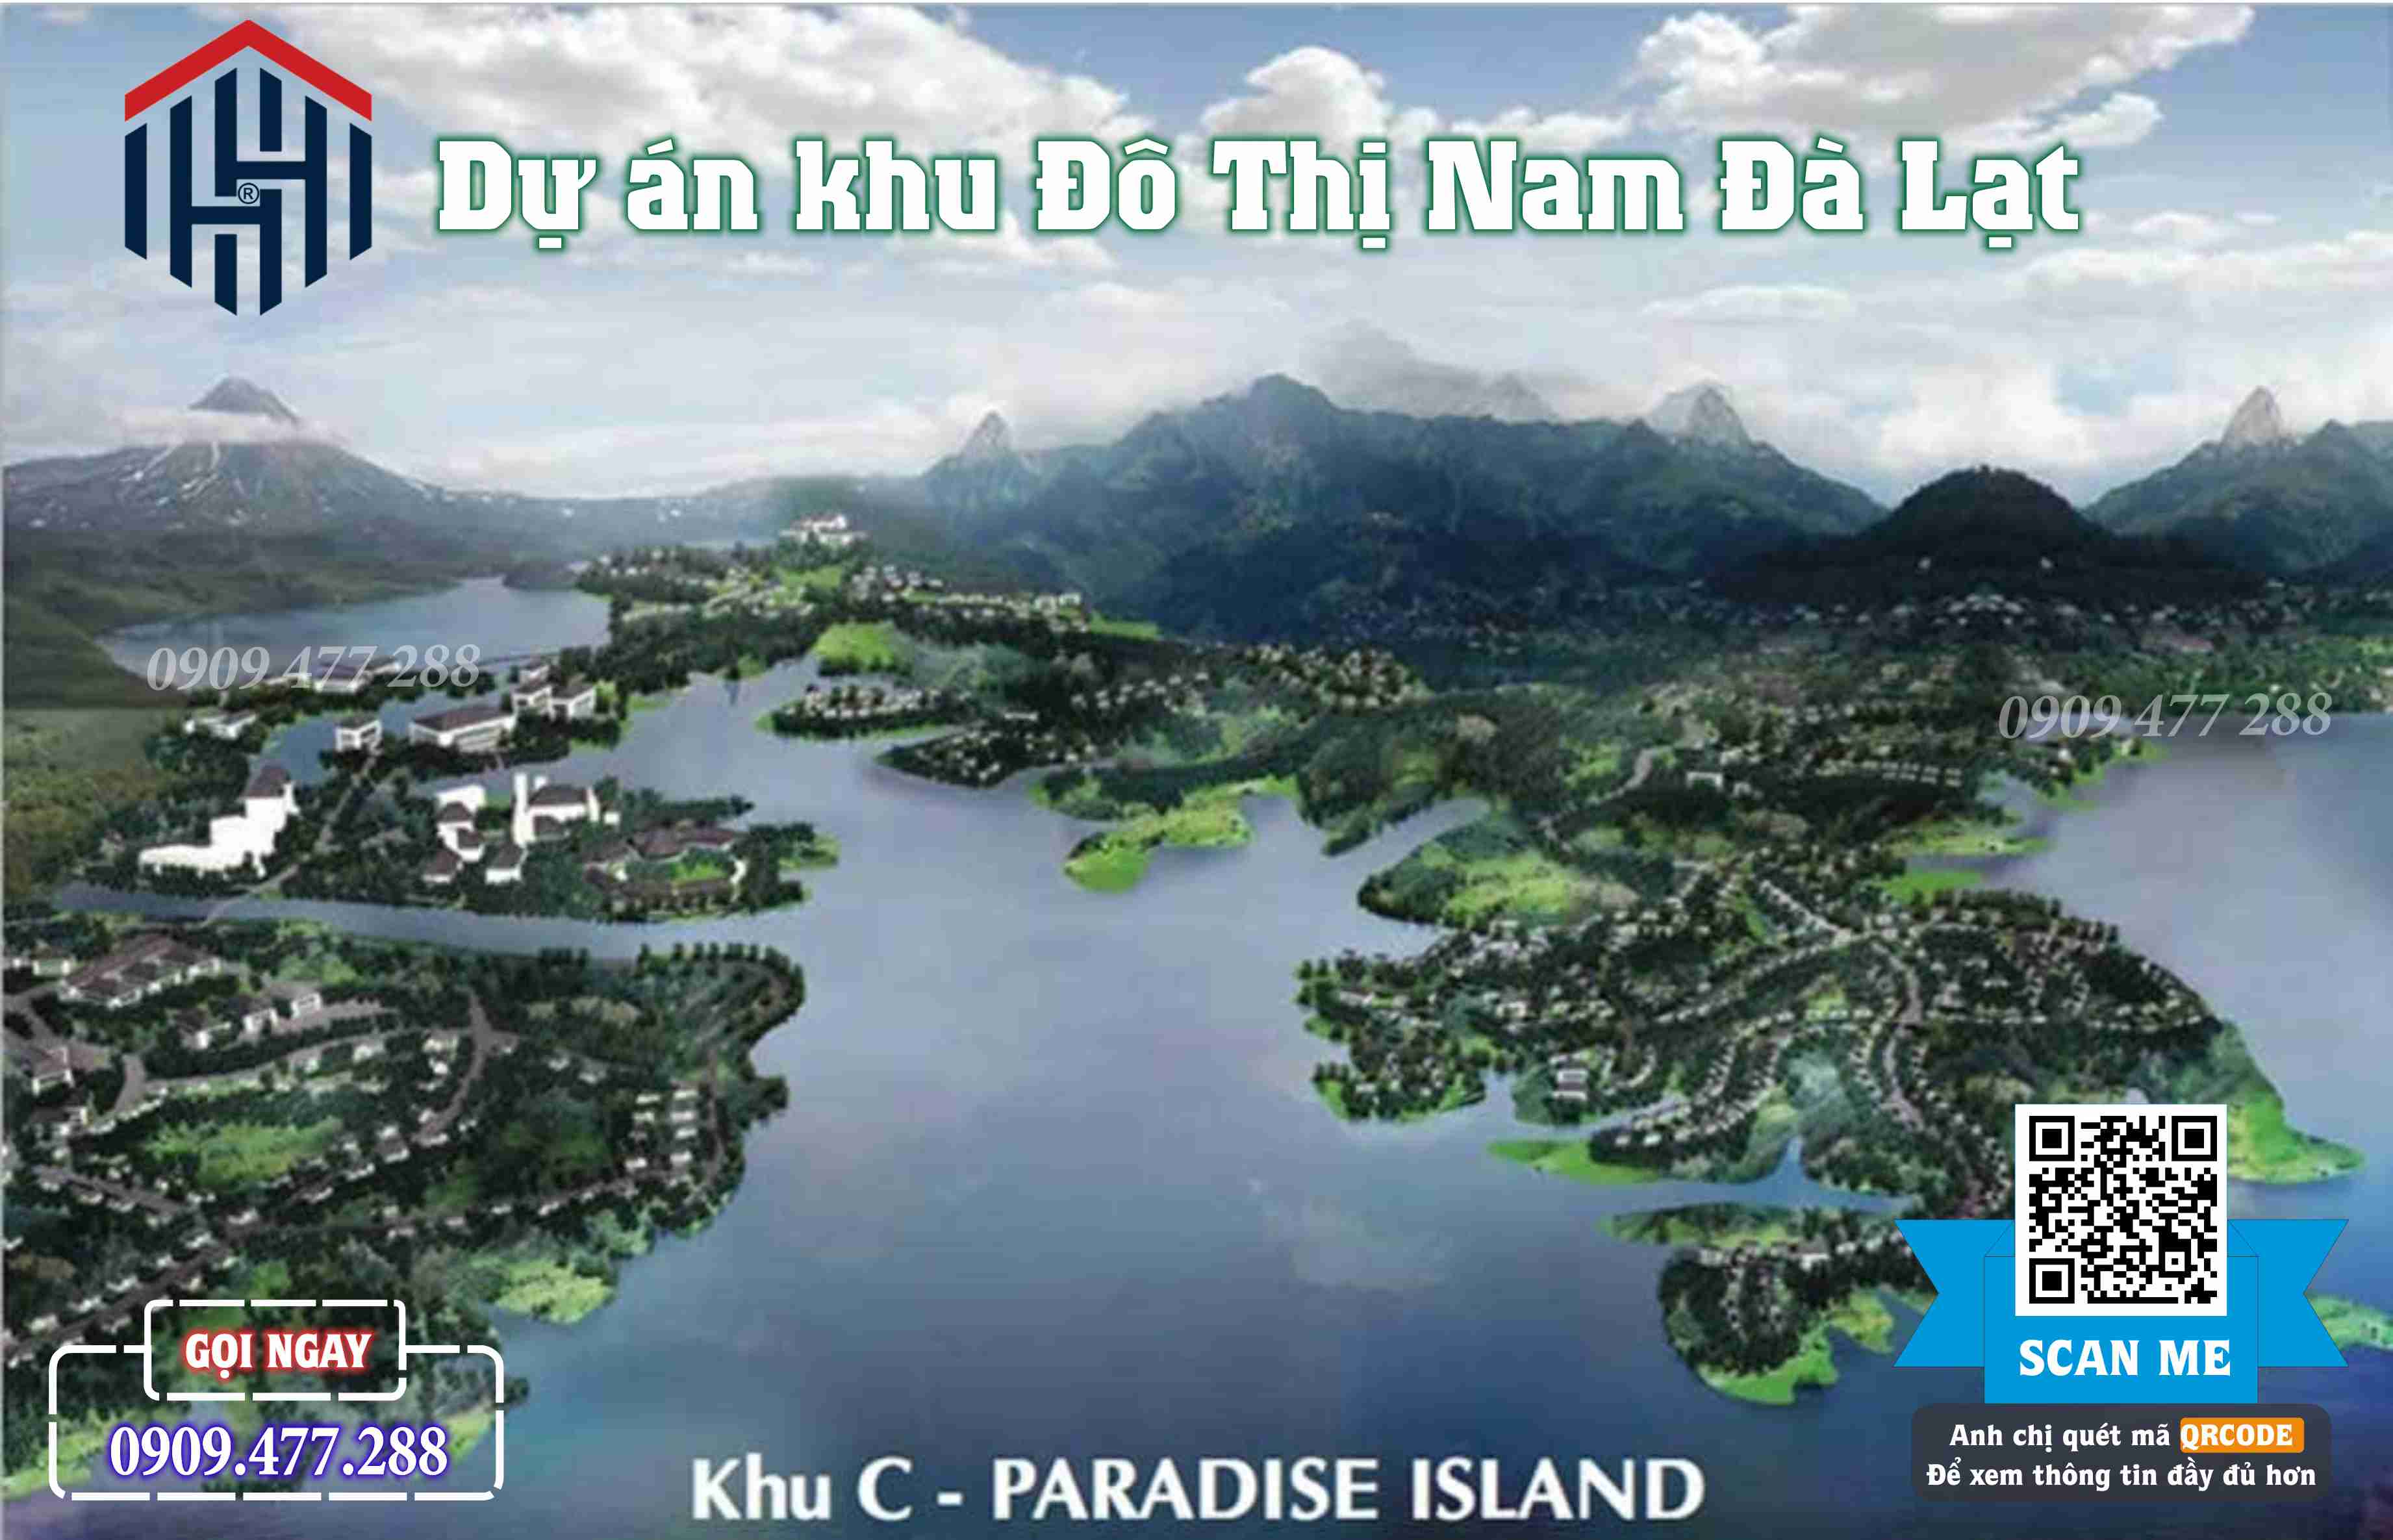 Khu C Paradise Island Khu đô thị Nam Đà Lạt